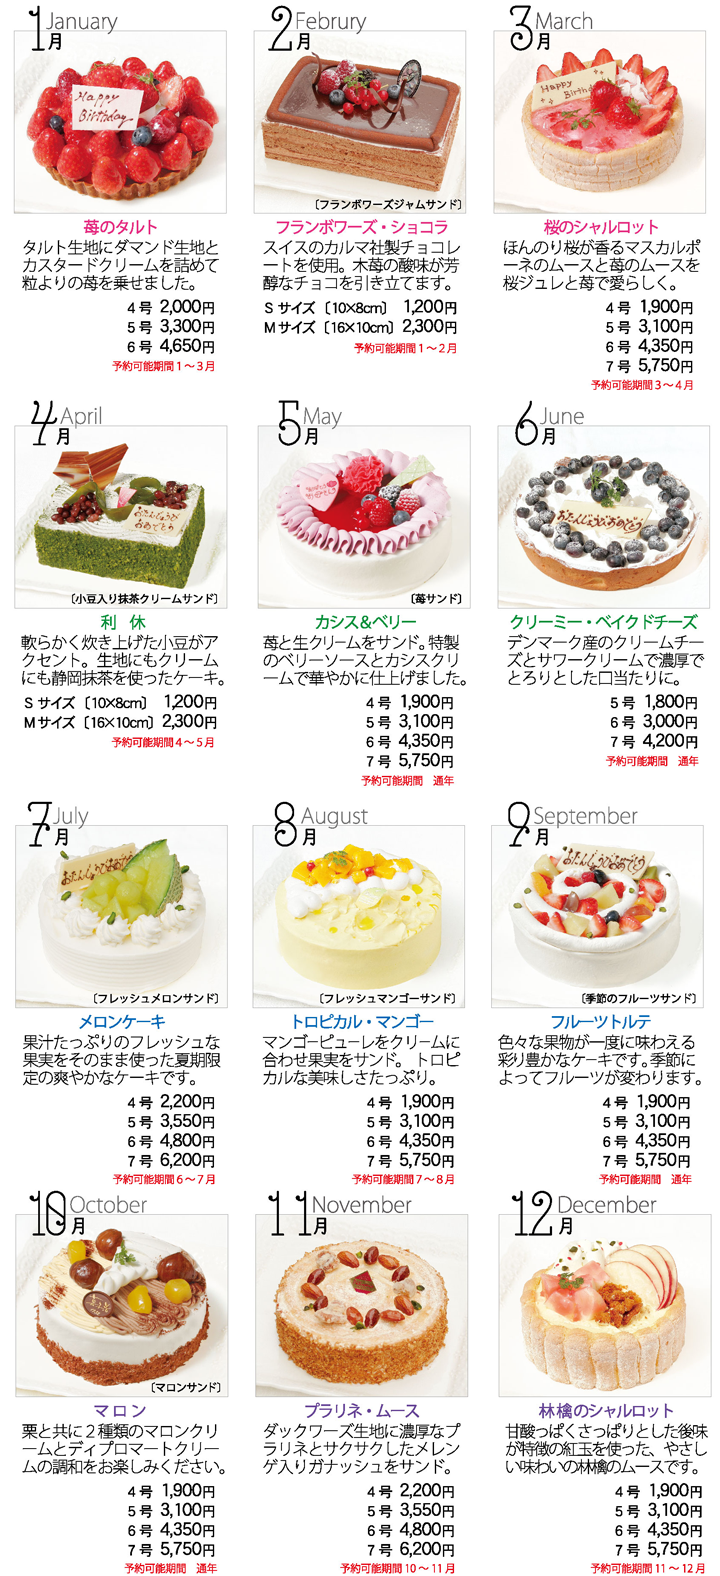 デコレーションケーキ 郷土菓子店かしはる 静岡県焼津市にあります郷土菓子店かしはるです